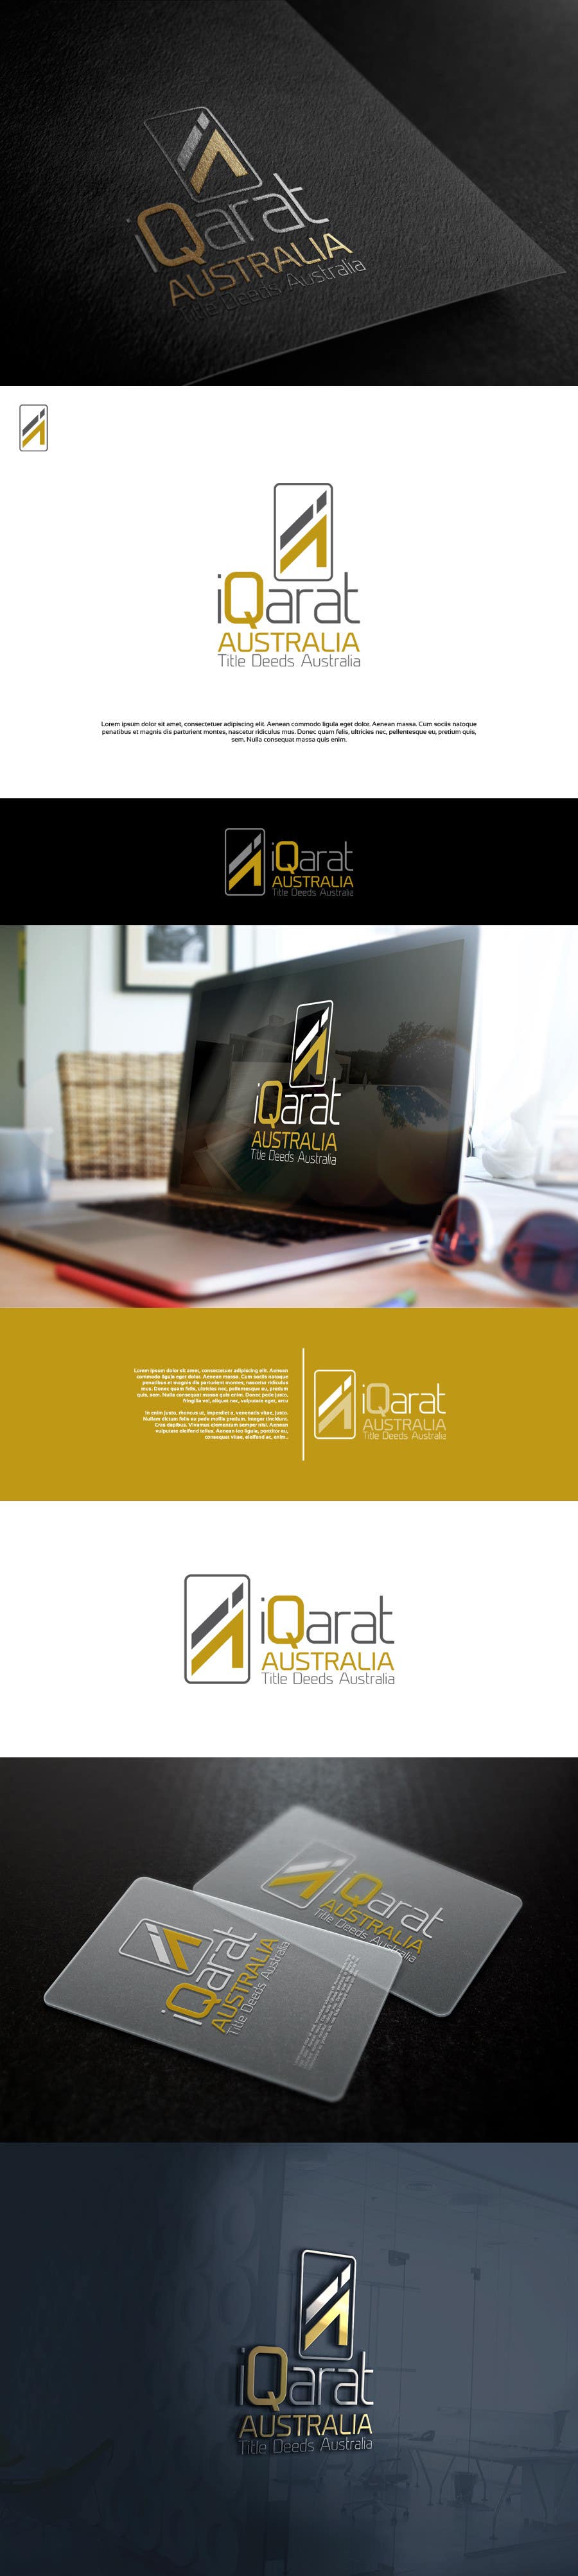 Příspěvek č. 47 do soutěže                                                 Design a Logo for an premium facilitator ‘Off-Market’ property concierge business - iQarat Australia
                                            